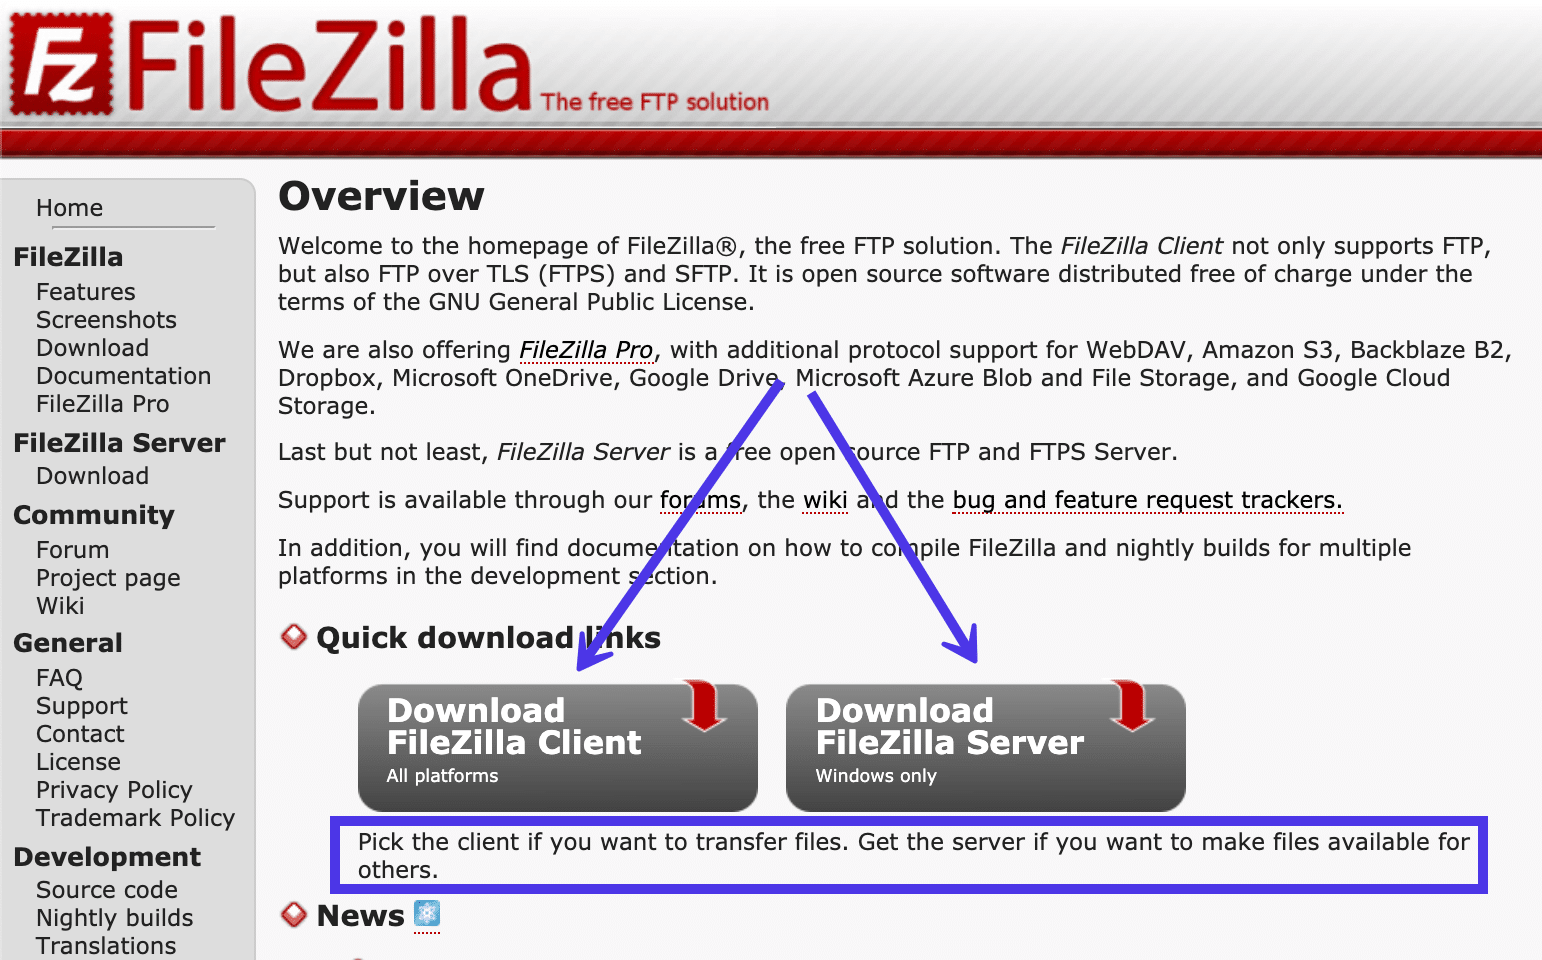 Auf der FileZilla-Webseite gab es zwei Download-Optionen für den FileZilla Client und den FileZilla Server.